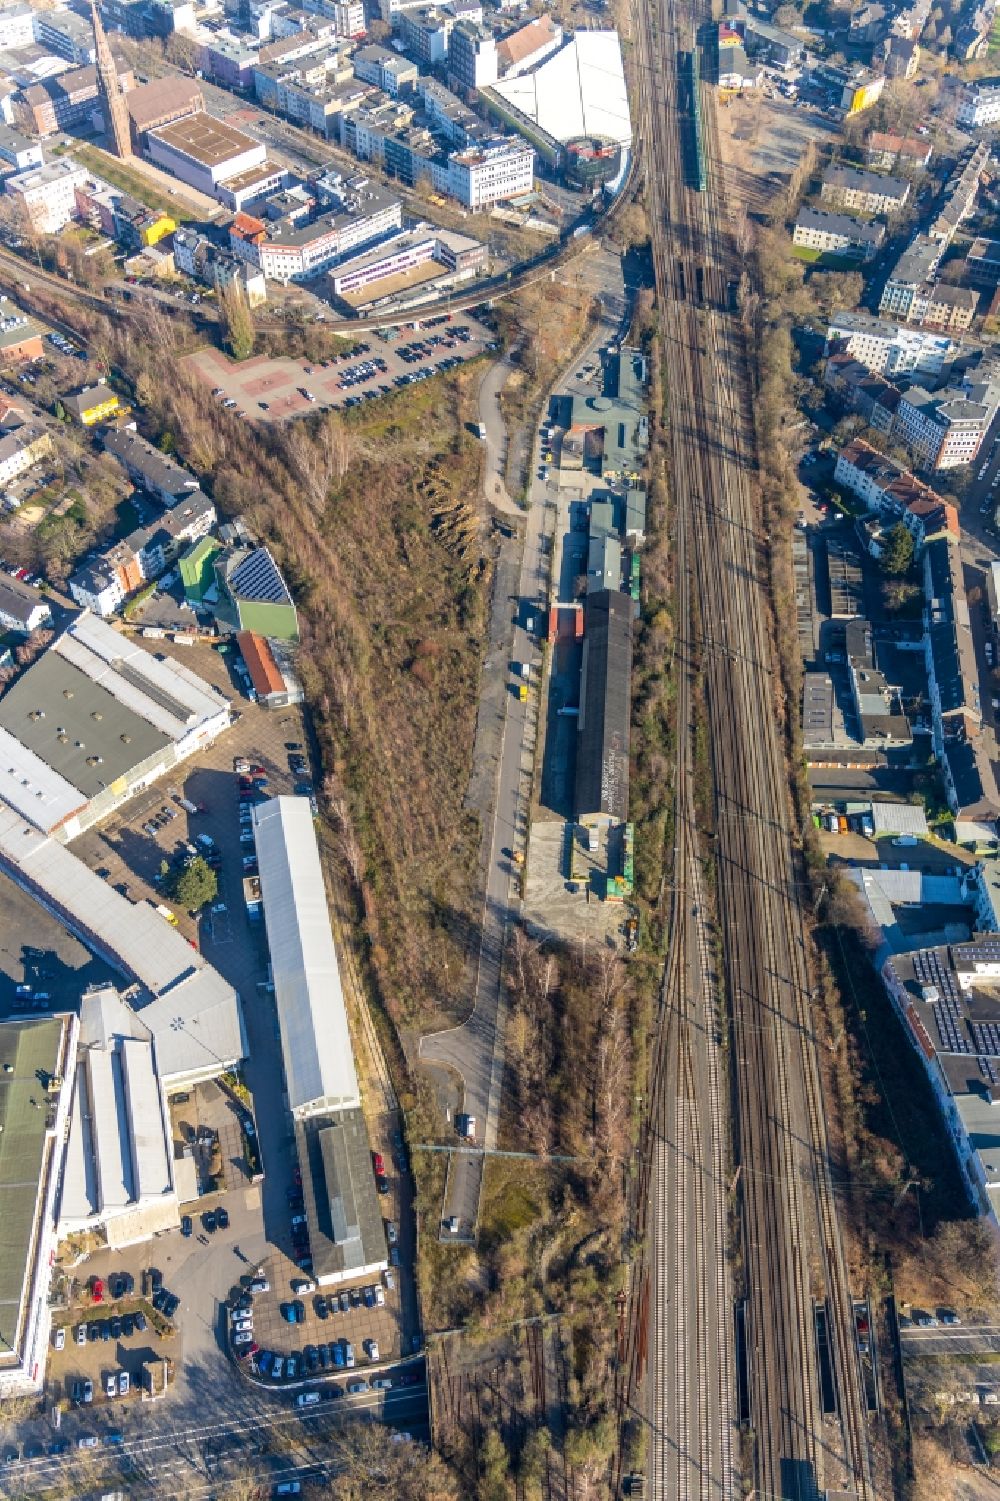 Luftbild Bochum - Gewerbegebiet mit Blick auf das Kulturzentrum Rotunde Bochum am Konrad-Adenauer-Platz im Ortsteil Innenstadt in Bochum im Bundesland Nordrhein-Westfalen, Deutschland